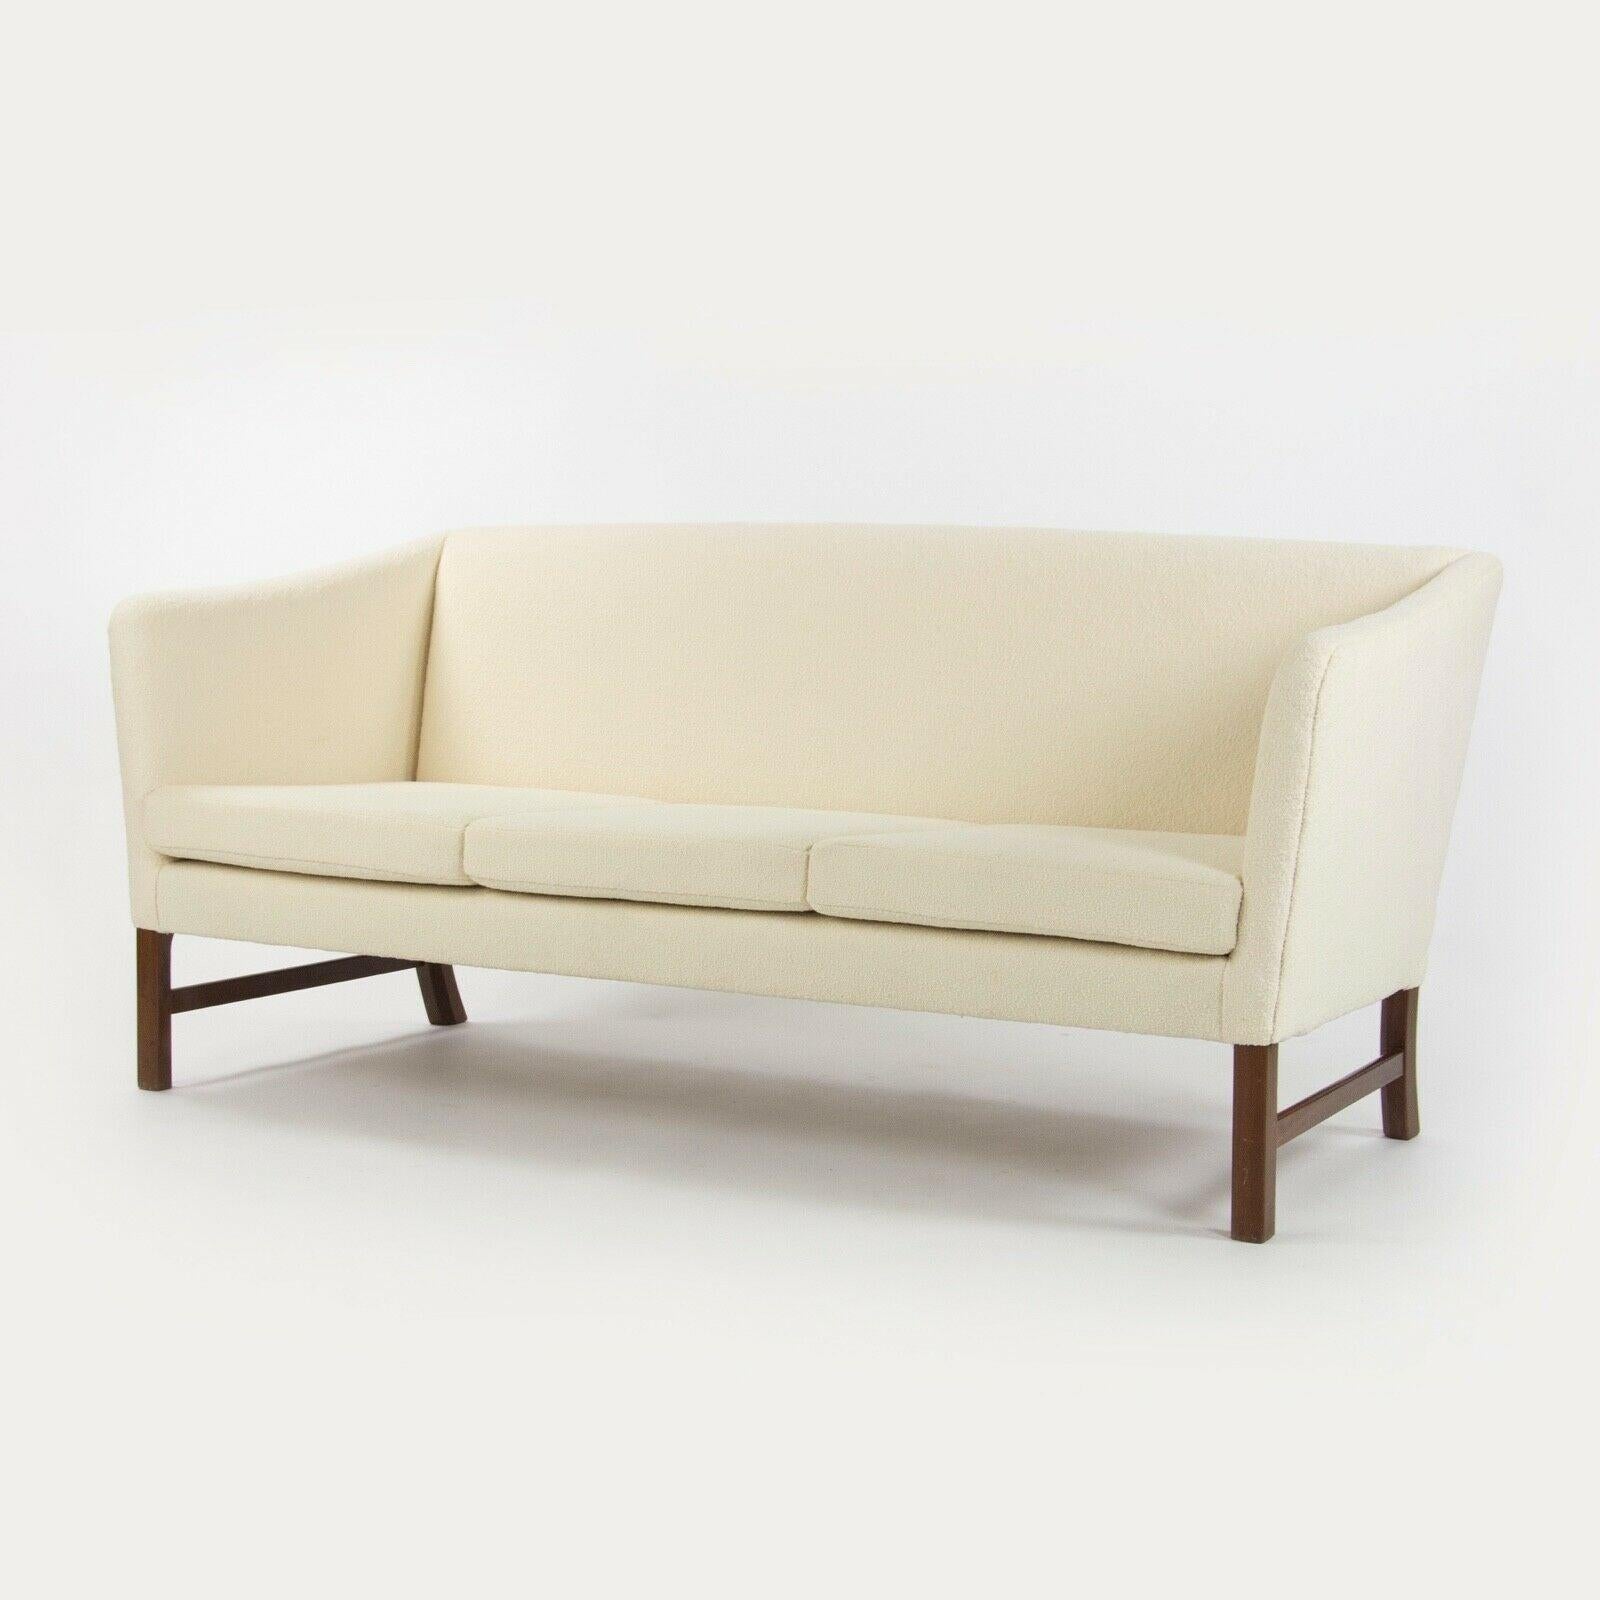 Zum Verkauf angeboten wird ein 1960er Ole Wanscher weißes Boucle-Stoff 3-Sitz Sofa. Dies ist ein wunderschönes Exemplar, das gerade erst von der angesehenen Polsterei Forthright NYC neu gepolstert worden ist. Er wurde mit einem wunderschönen